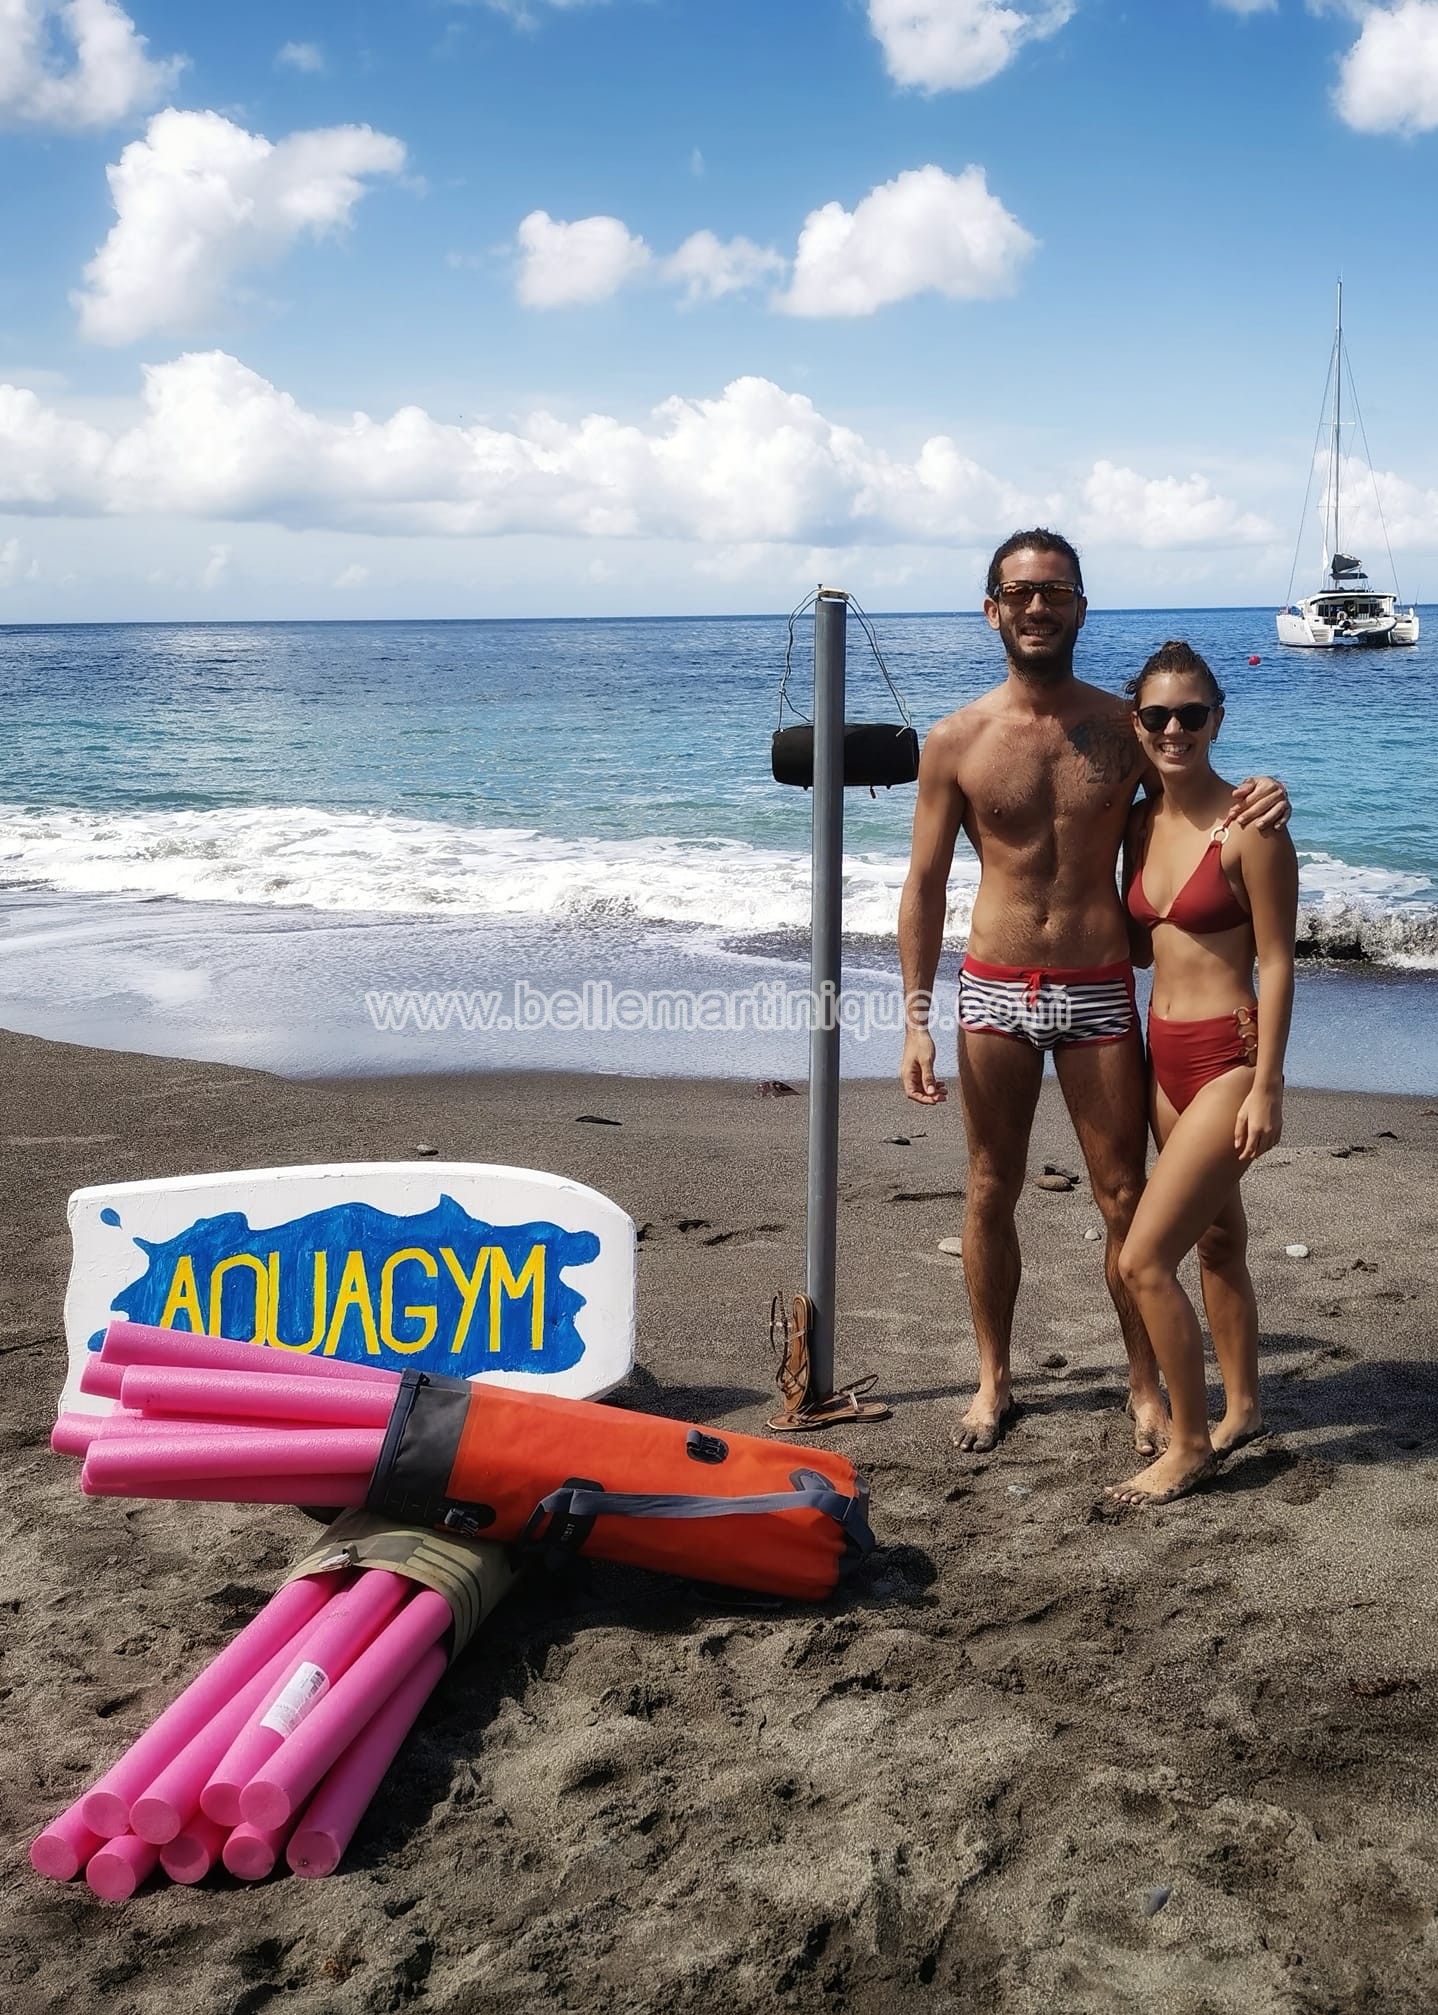 Flo-Life - Tropic - Aquagym - le carbet - St Pierre - Martinique - Antilles - Caraibes 2